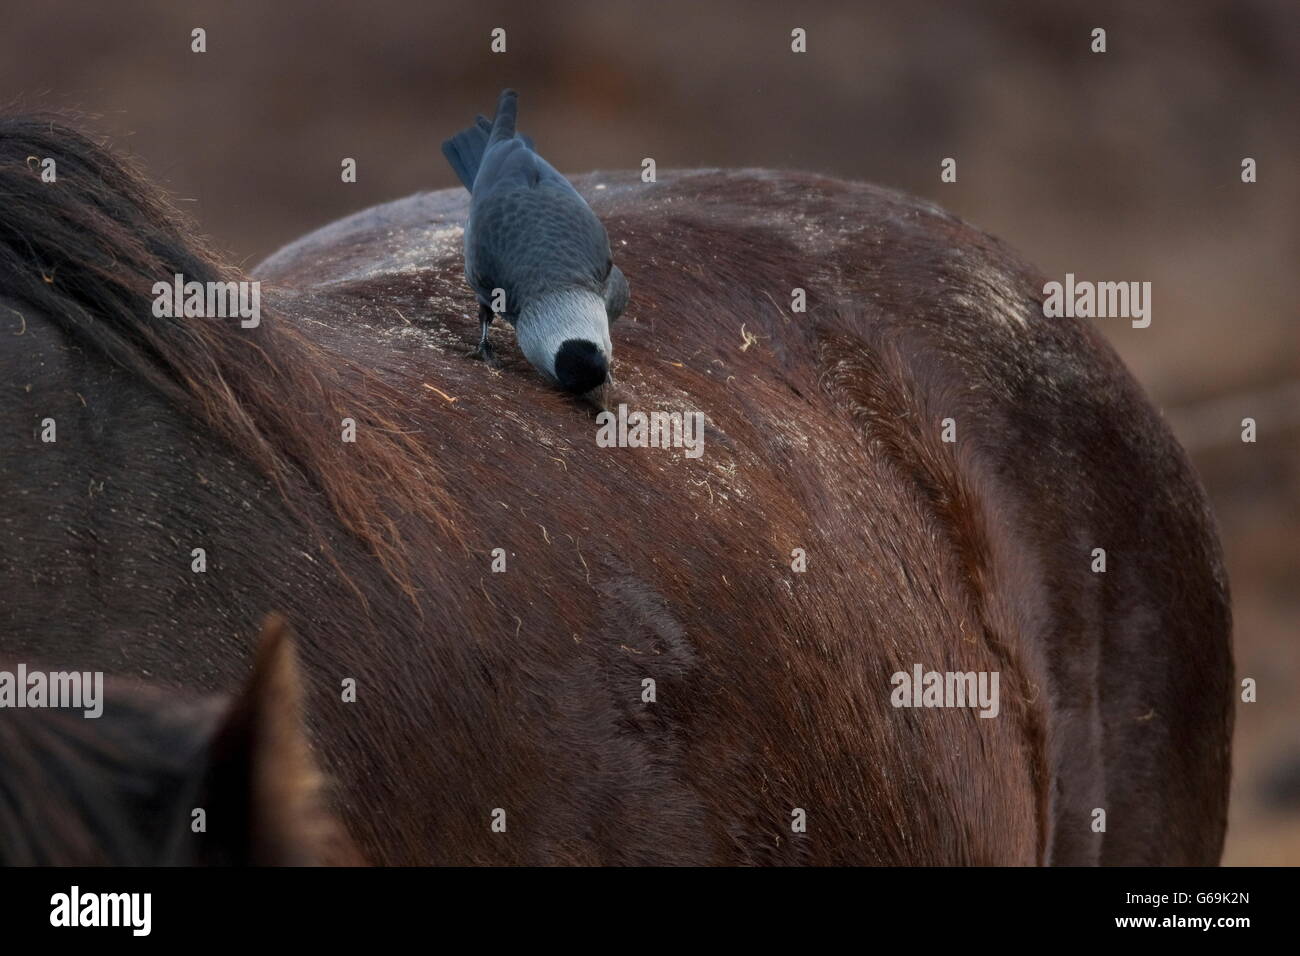 western jackdaw, horse, Texel, Netherlands / (Corvus monedula) Stock Photo